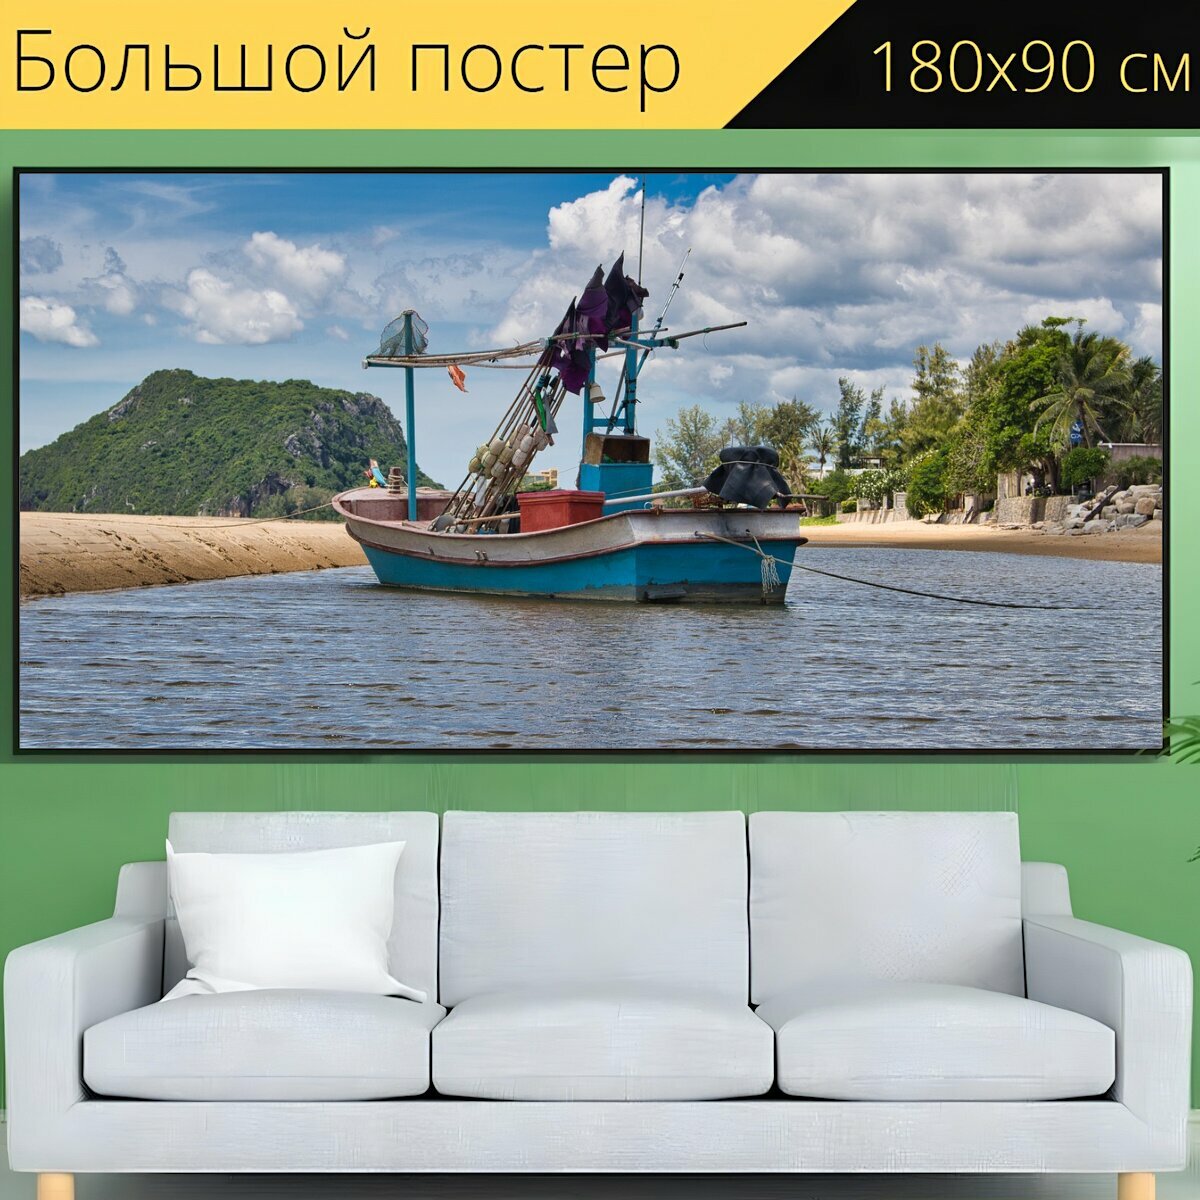 Большой постер "Лодка, рыболовная лодка, залив" 180 x 90 см. для интерьера